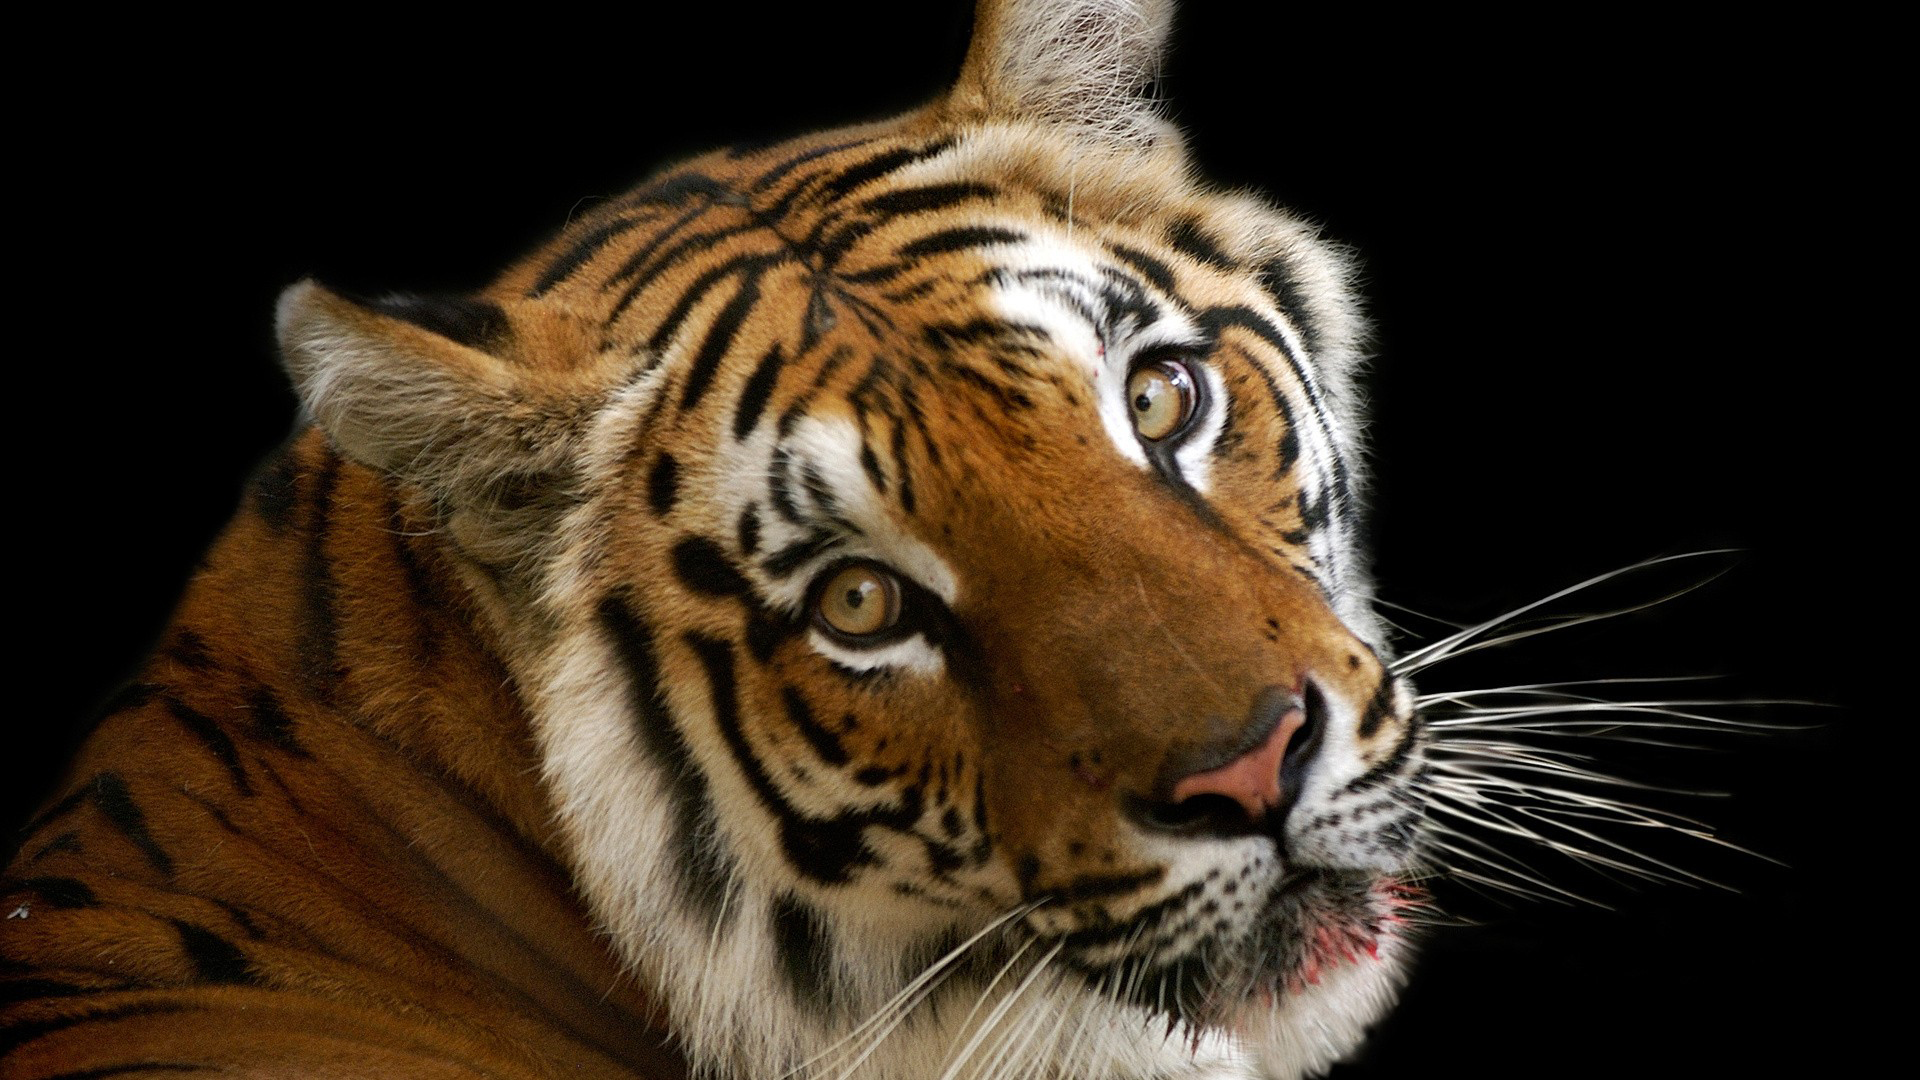 tigre enojado fondo de pantalla hd,tigre,fauna silvestre,tigre de bengala,bigotes,animal terrestre